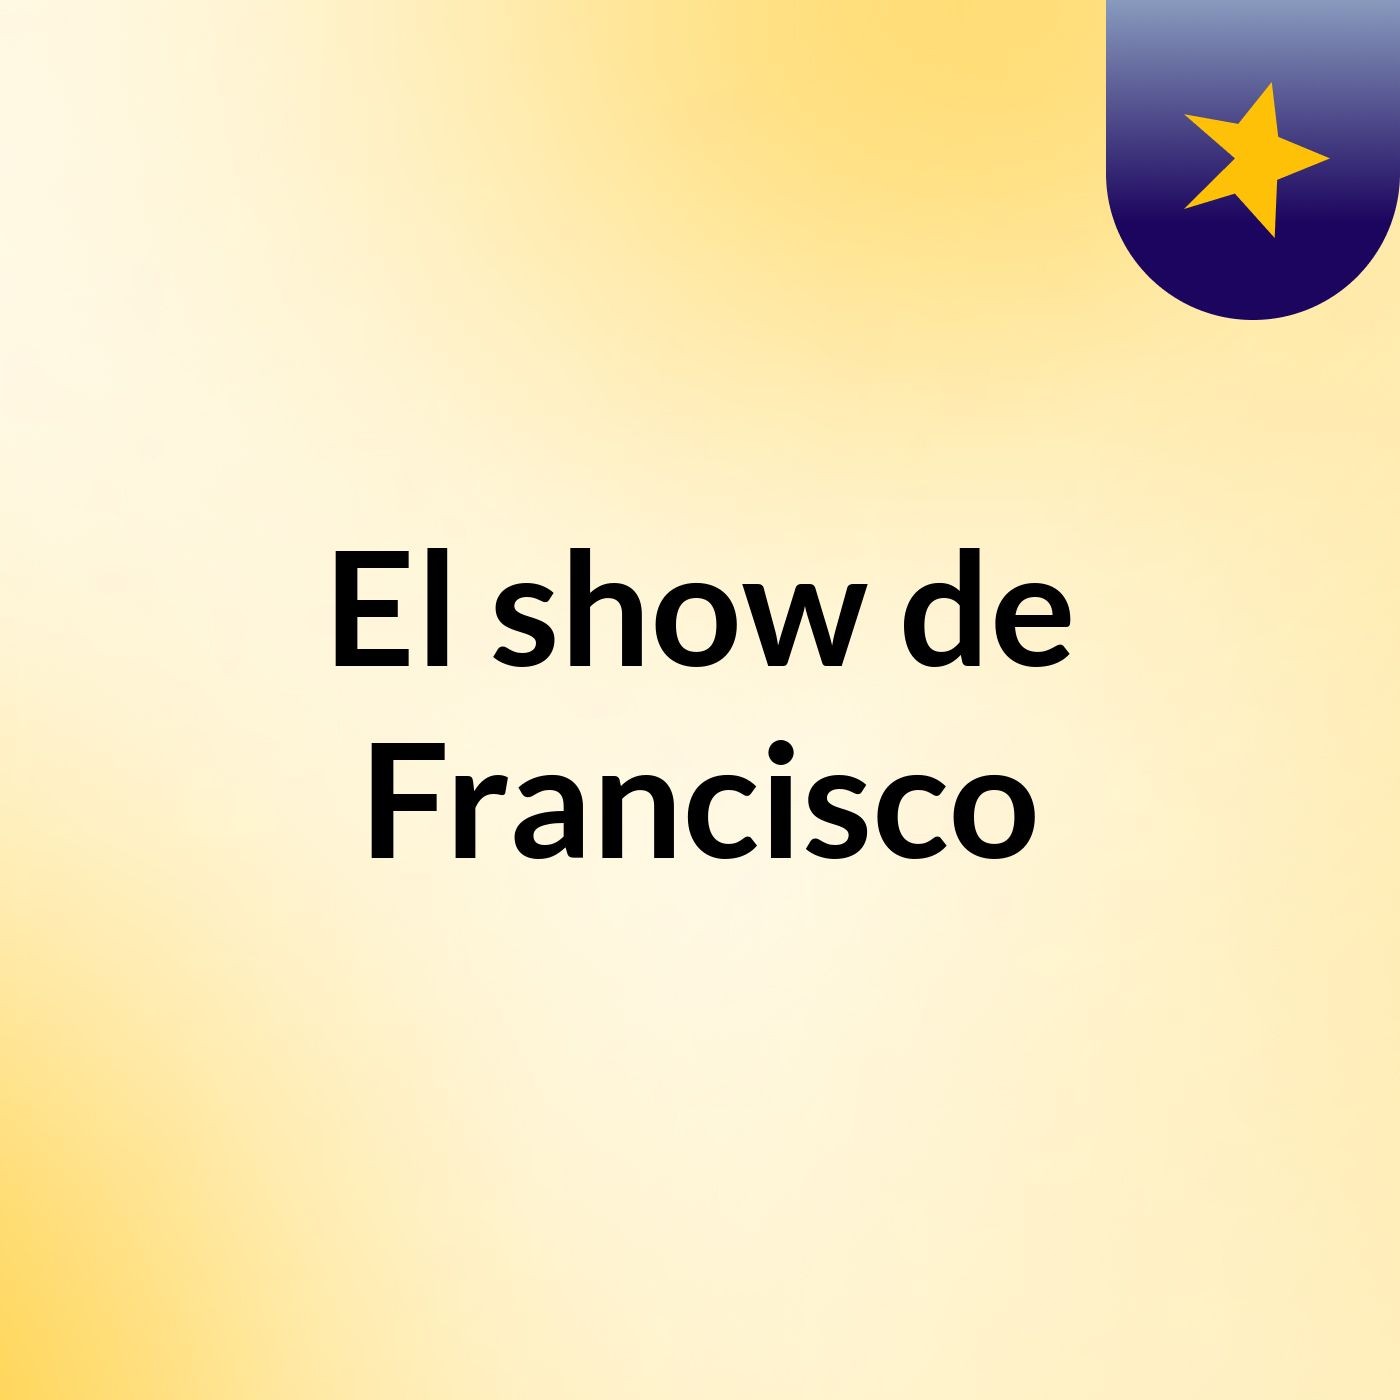 El show de Francisco